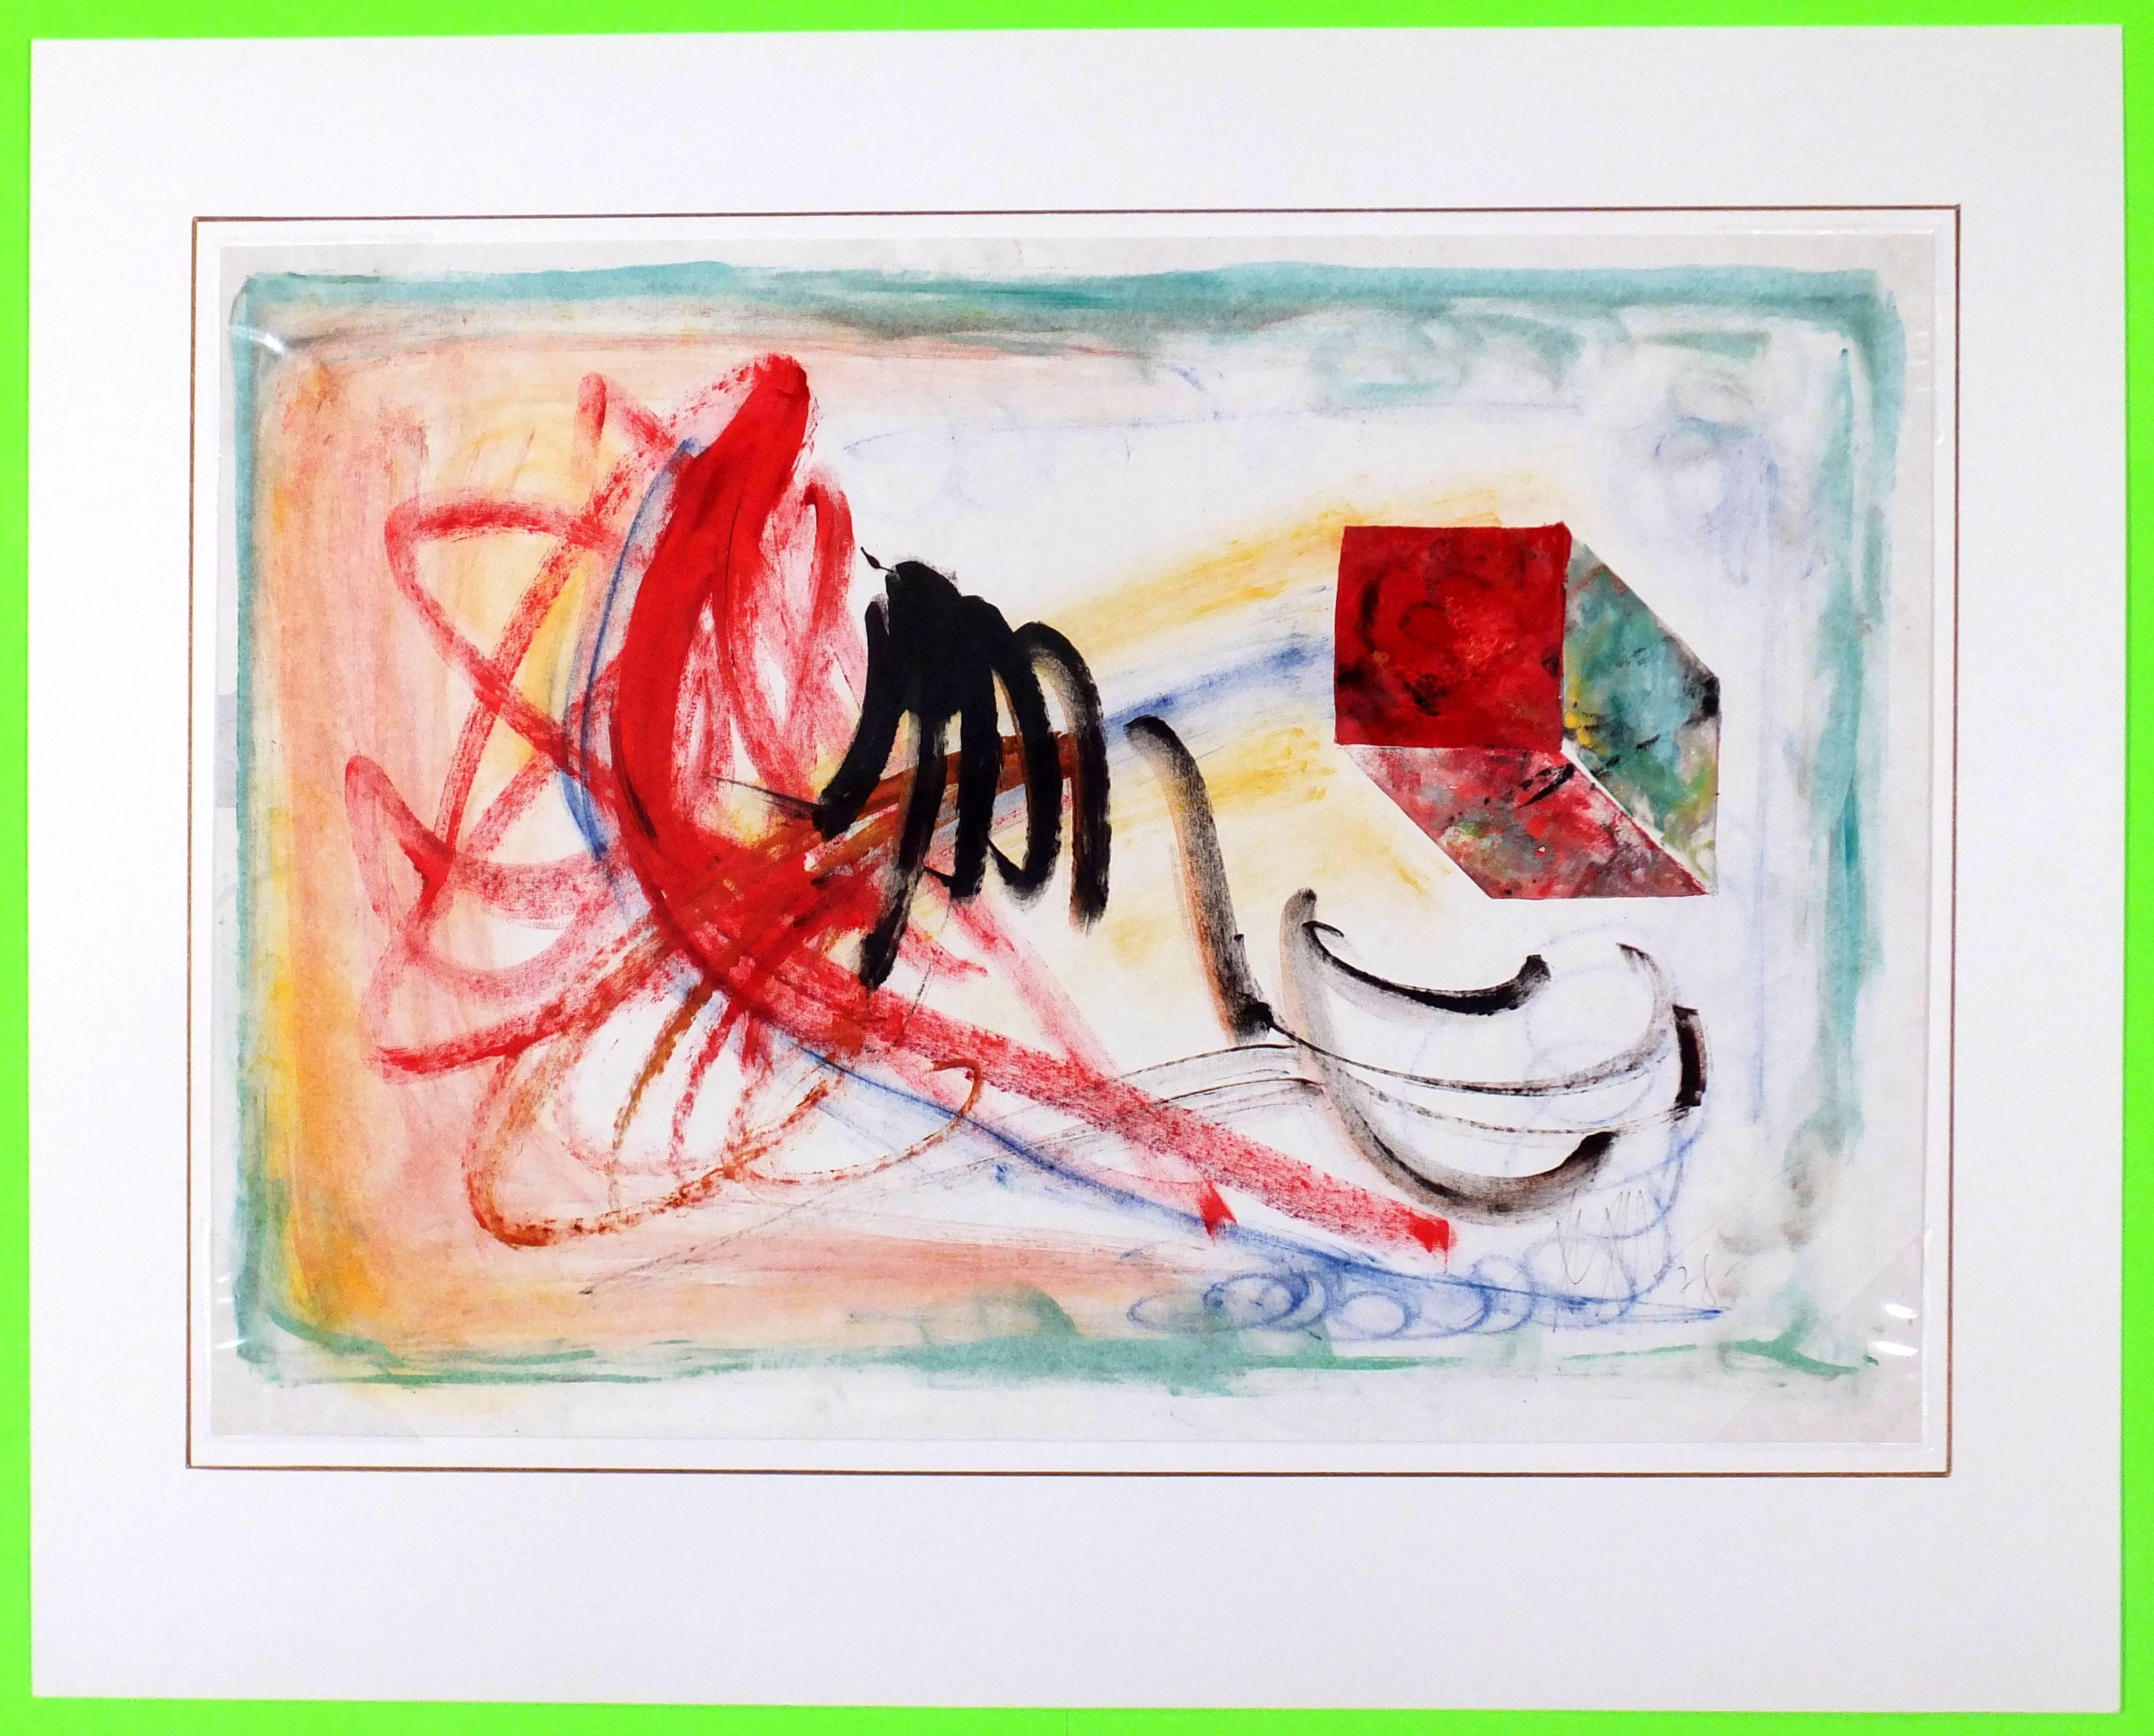 Lebhaftes abstraktes Gemälde mit Primärfarben in Gelb, Rot und Grün mit blauen und schwarzen Akzenten auf weißem Hintergrund, 1952. Signiert unten rechts.  

Originalkunstwerk auf Papier auf einem weißen Passepartout mit Goldrand. Die Matte passt in